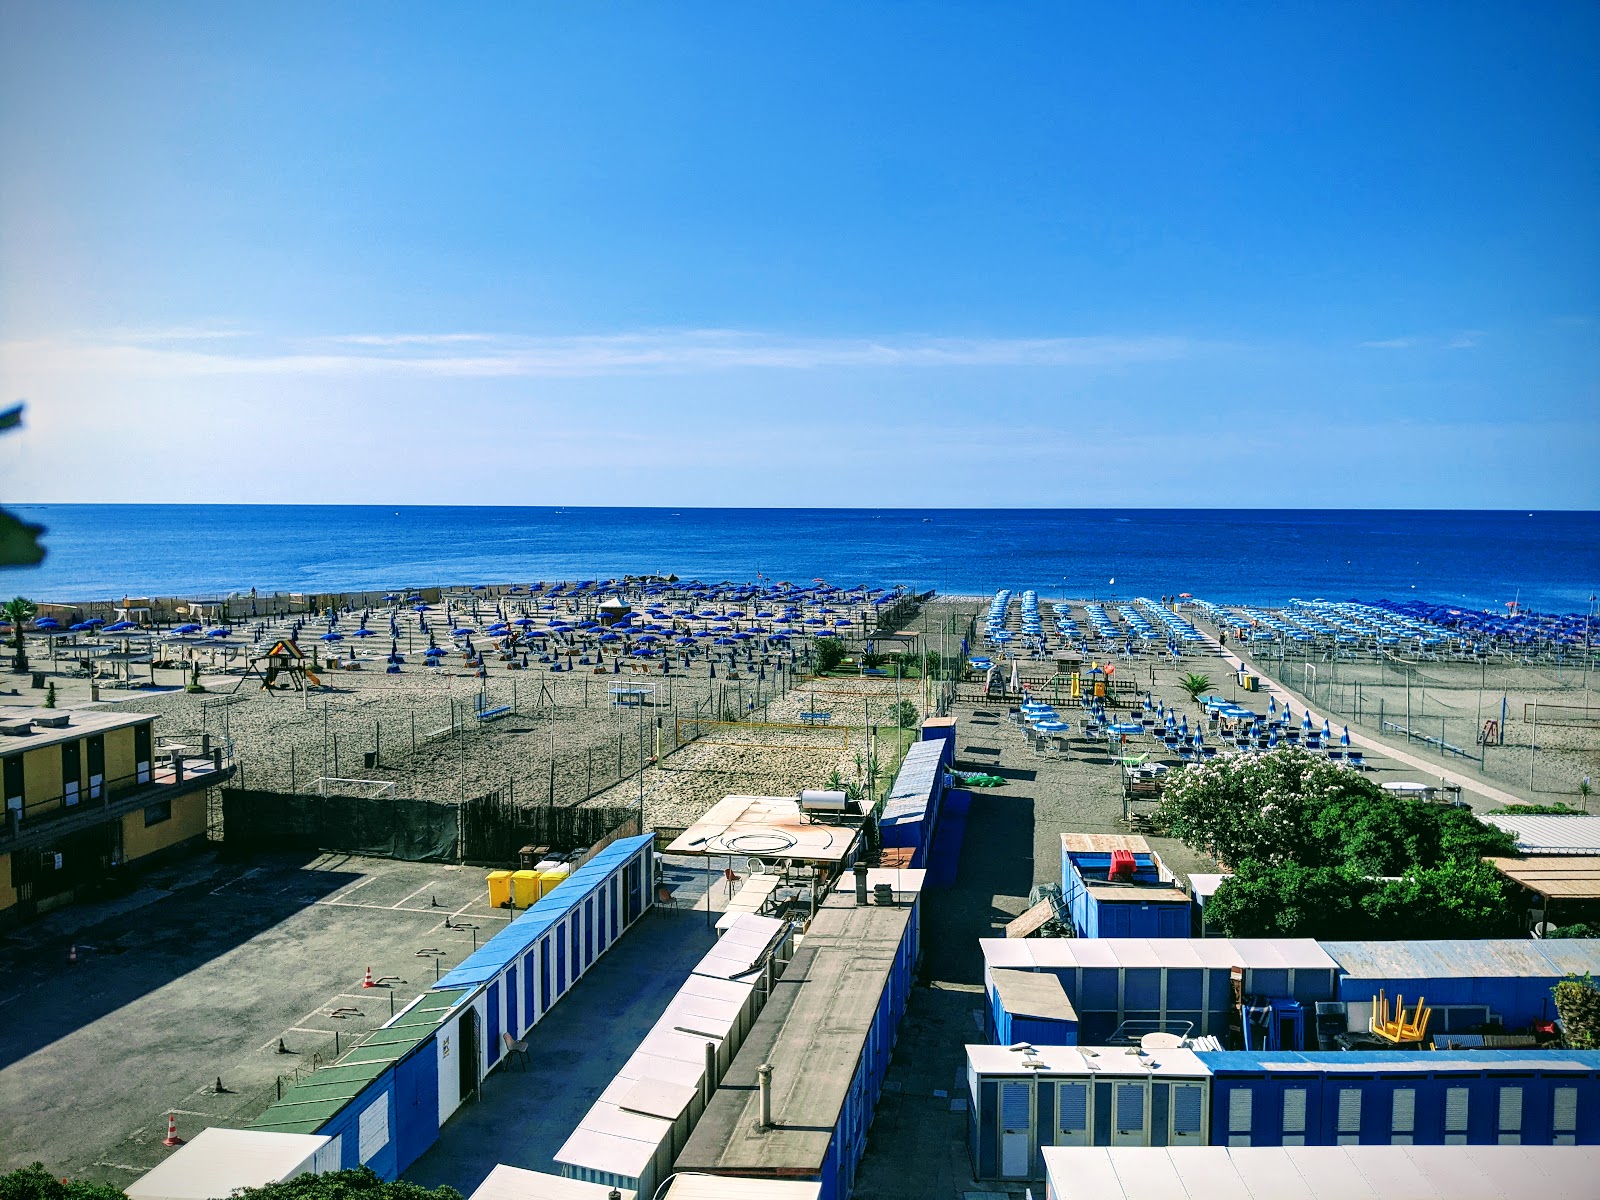 Foto de Spiaggia Tito Groppo con agua azul superficie